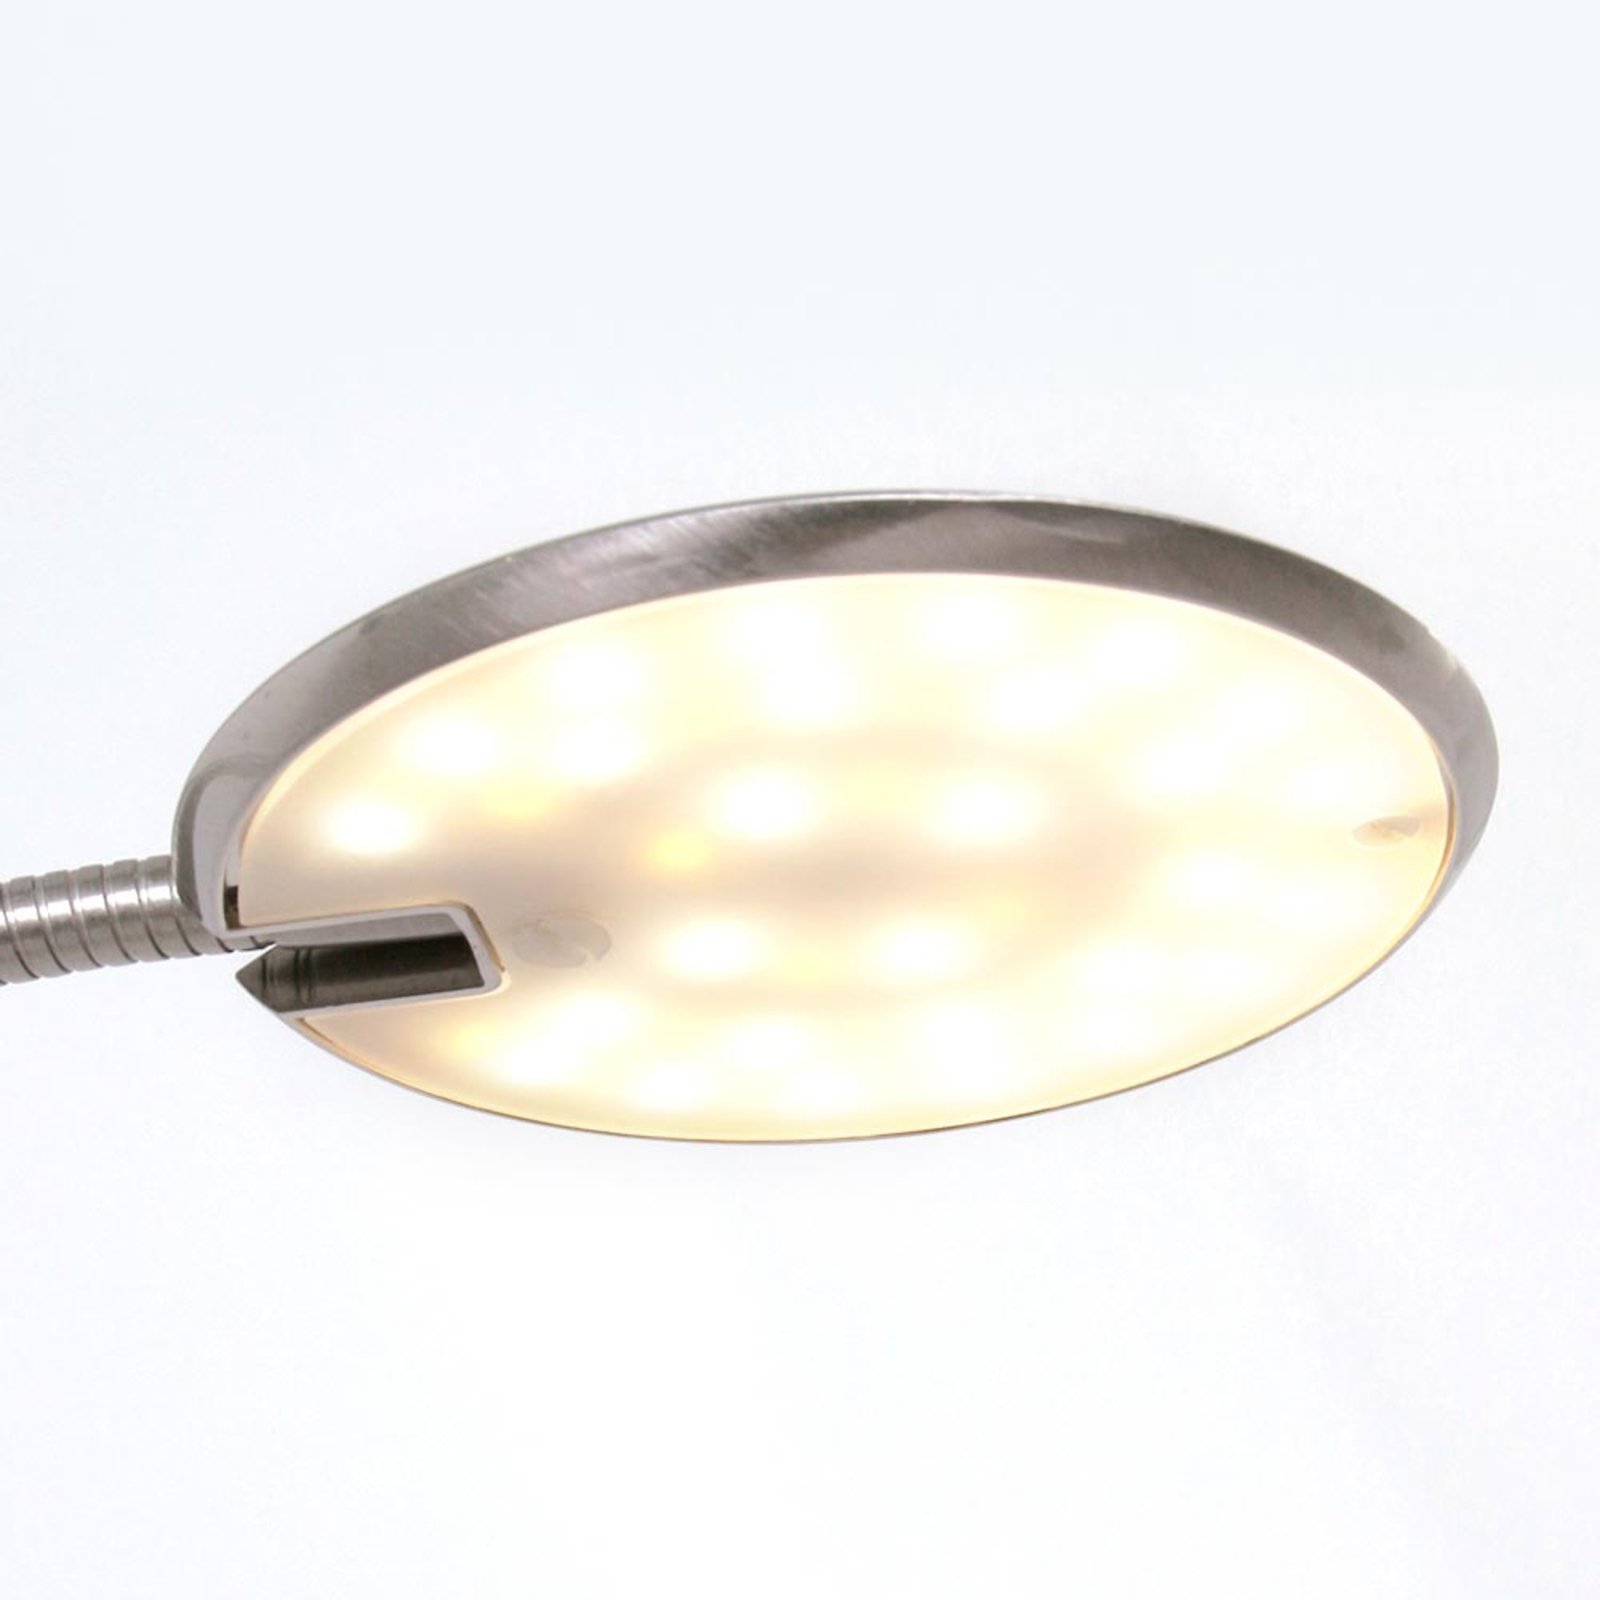 Zenith - Lampe à poser LED dimmable, acier